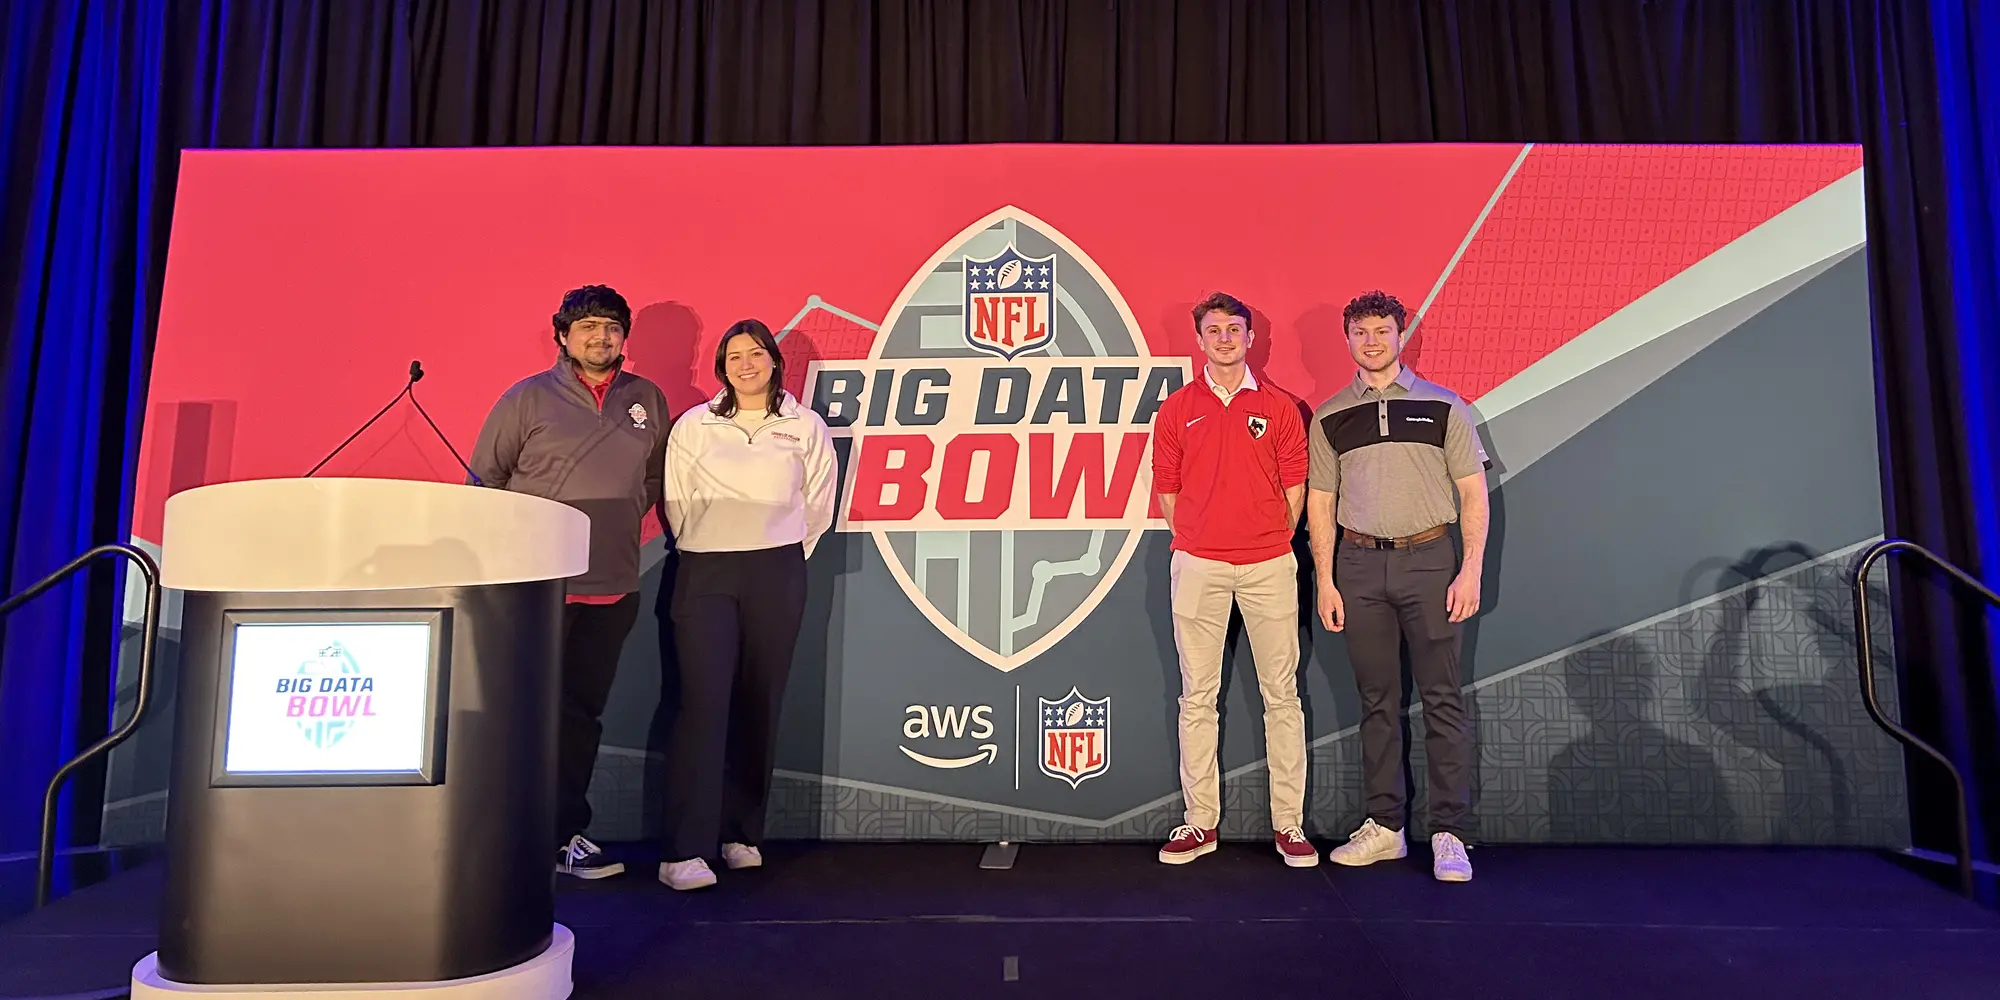 Students at the Big Data Bowl